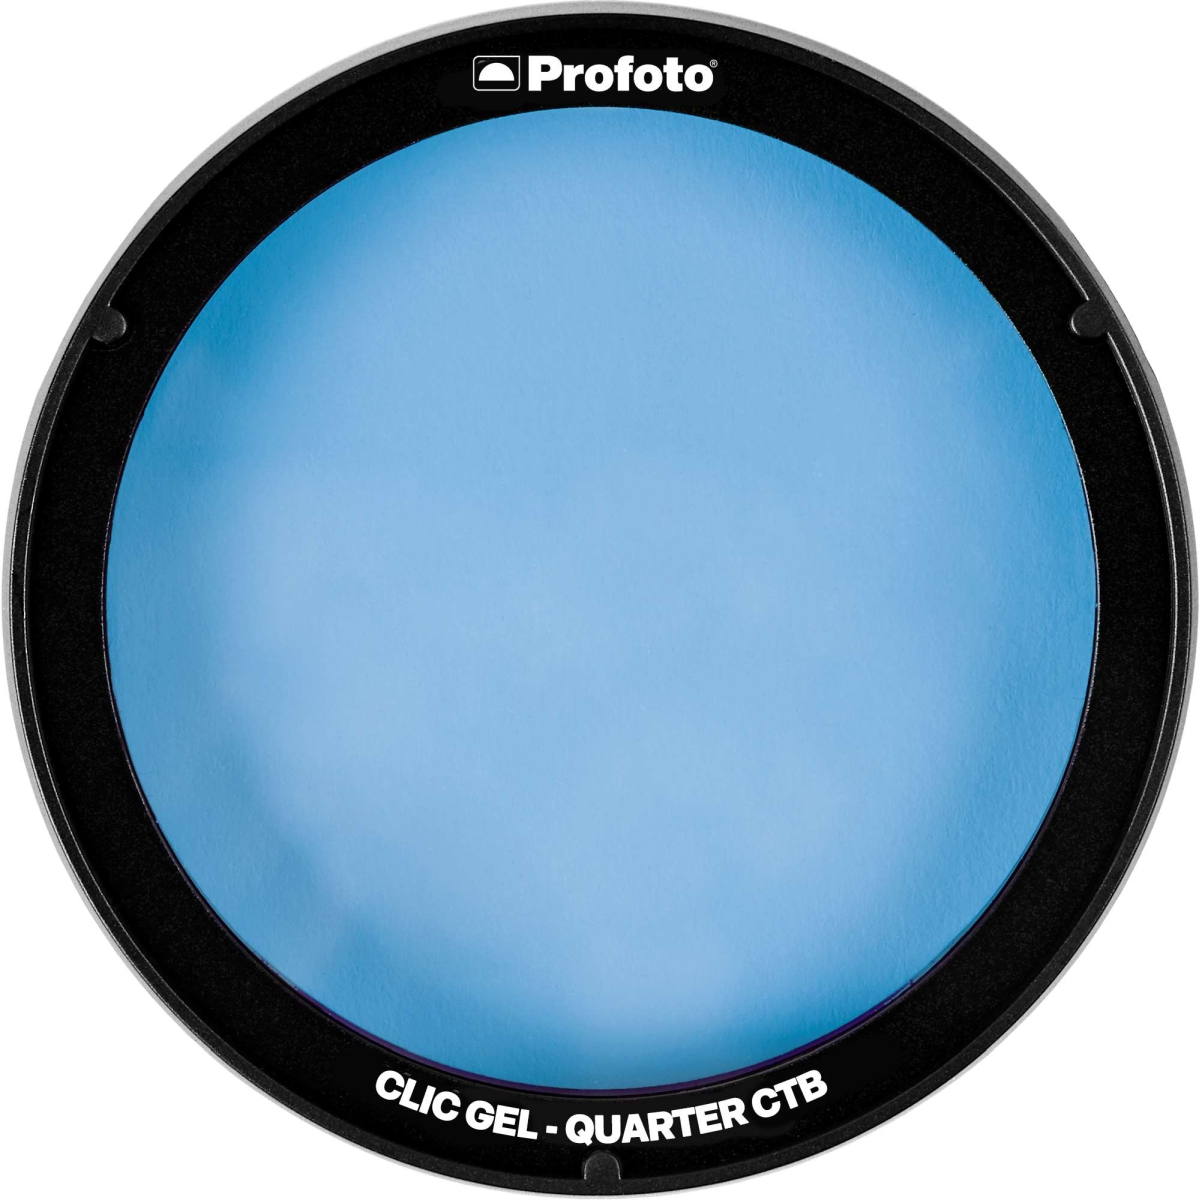 Profoto Clic Gel Quarter CBT